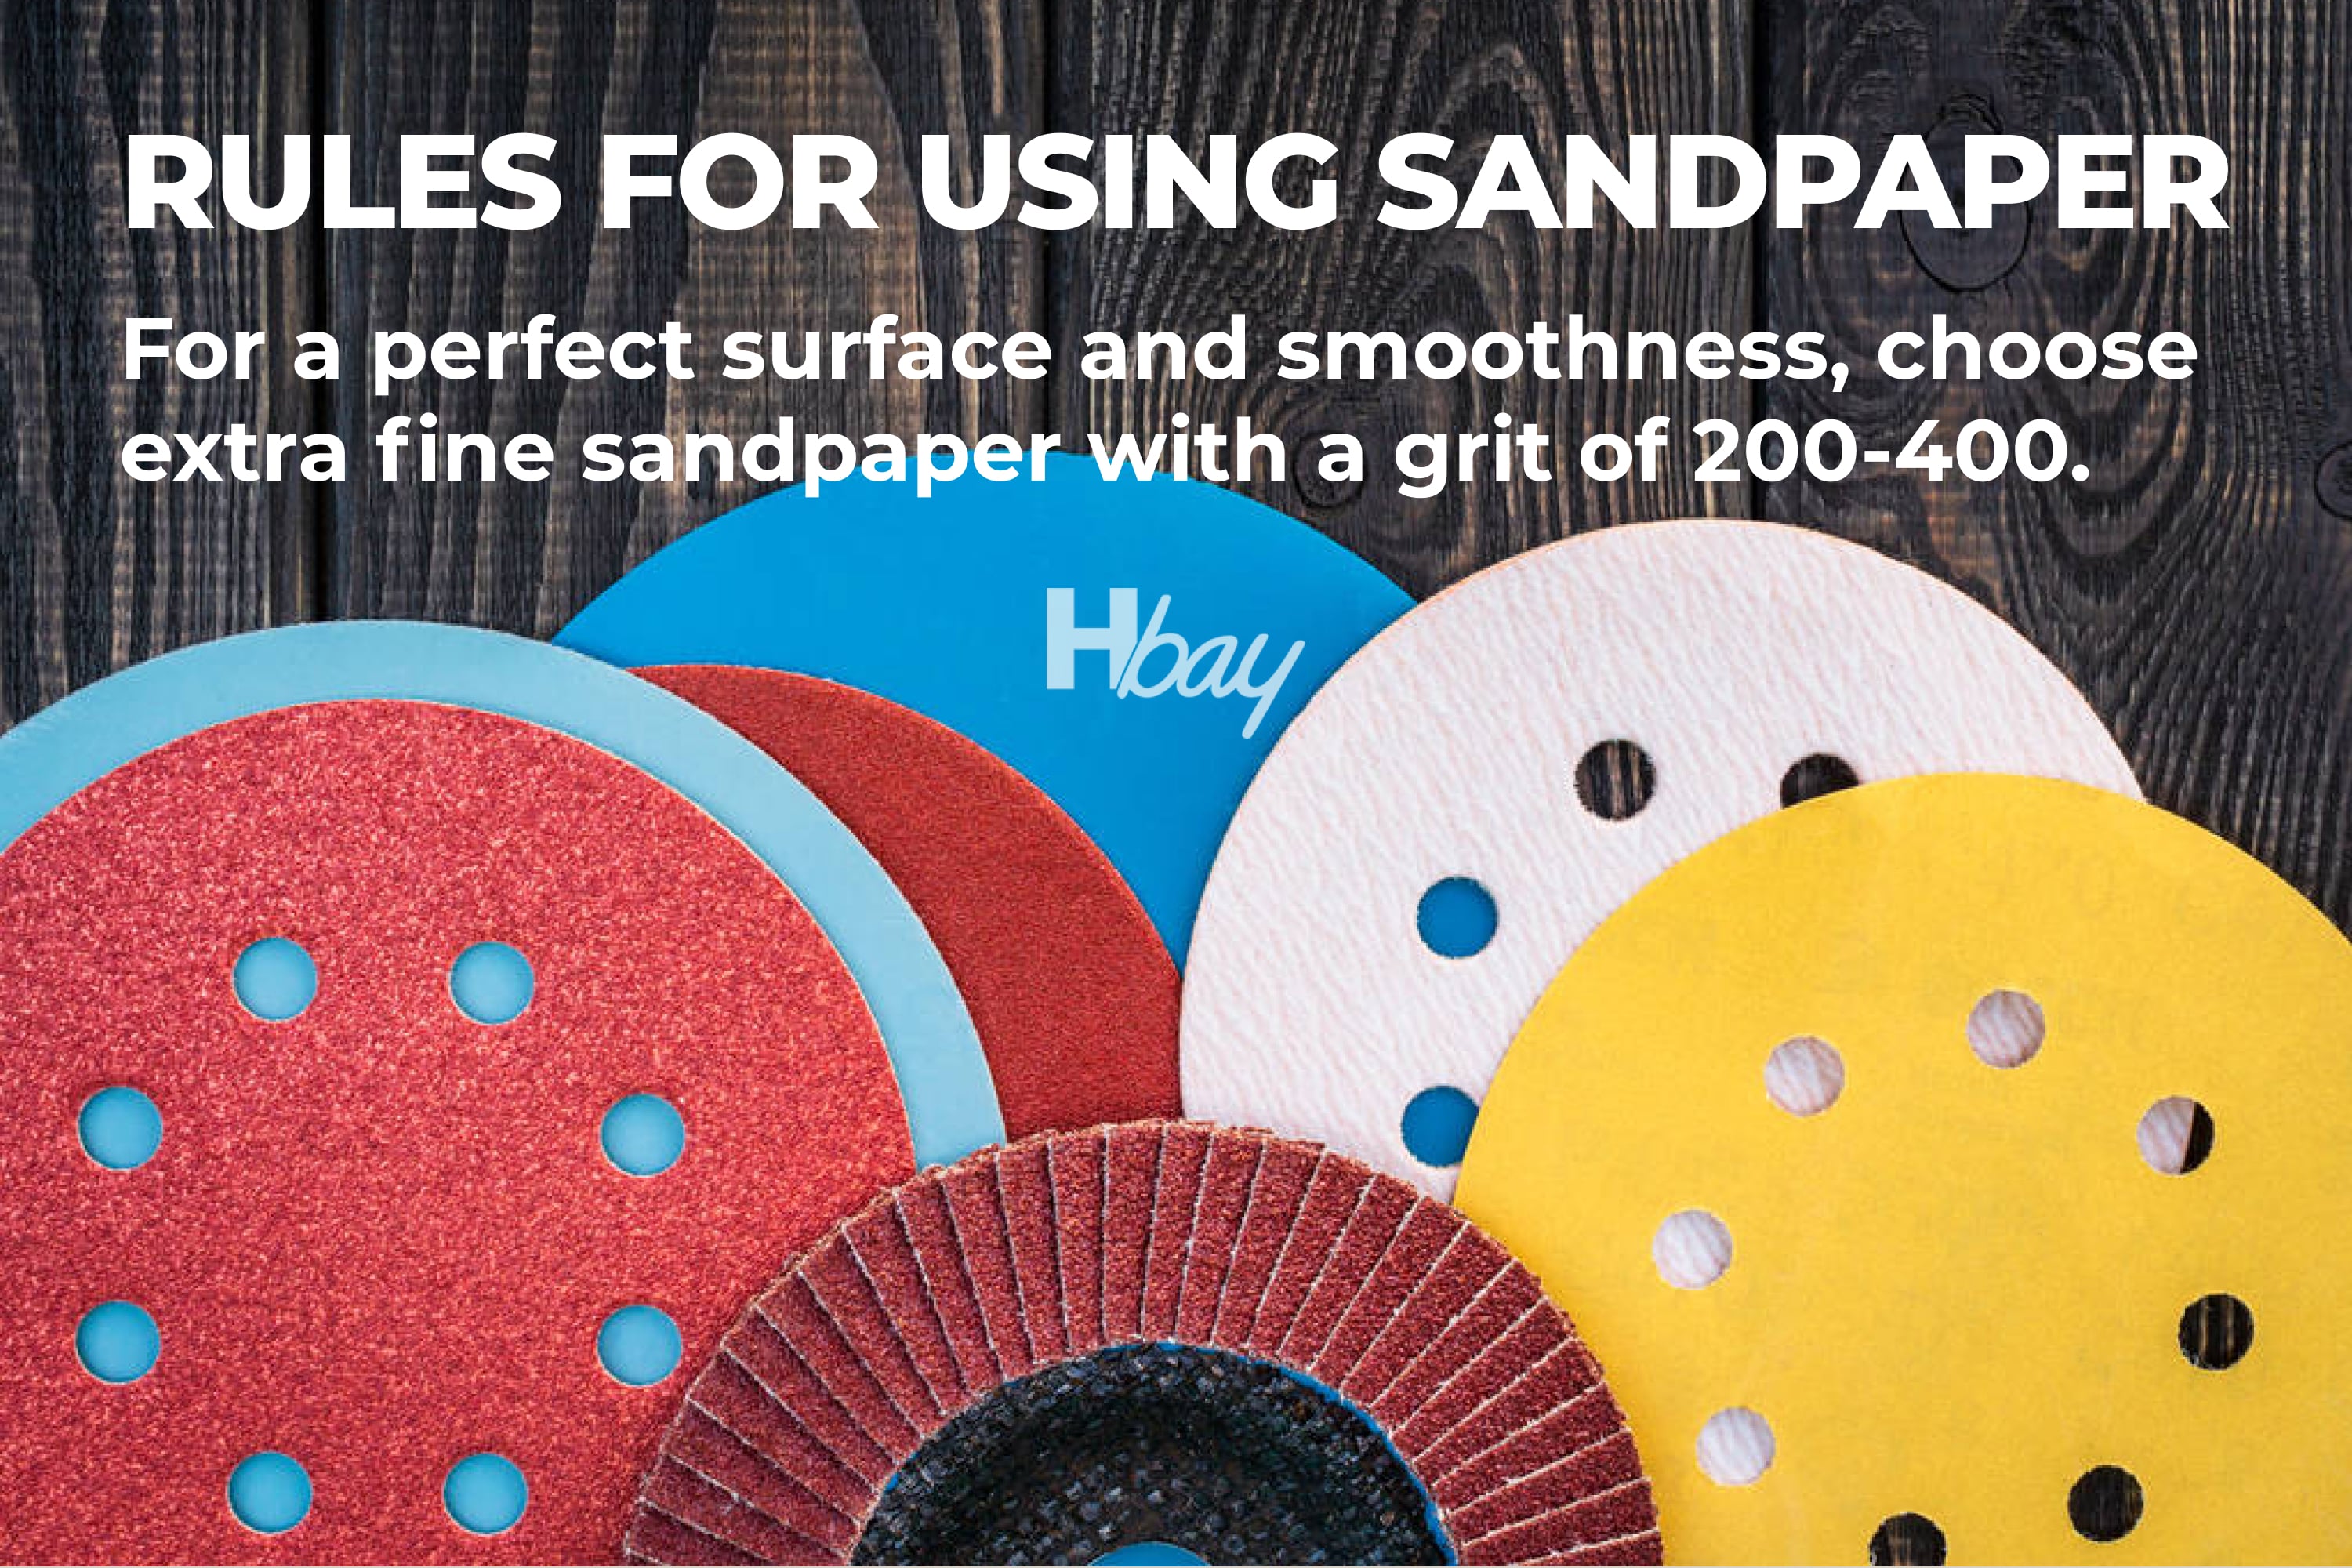 Rules for using sandpaper